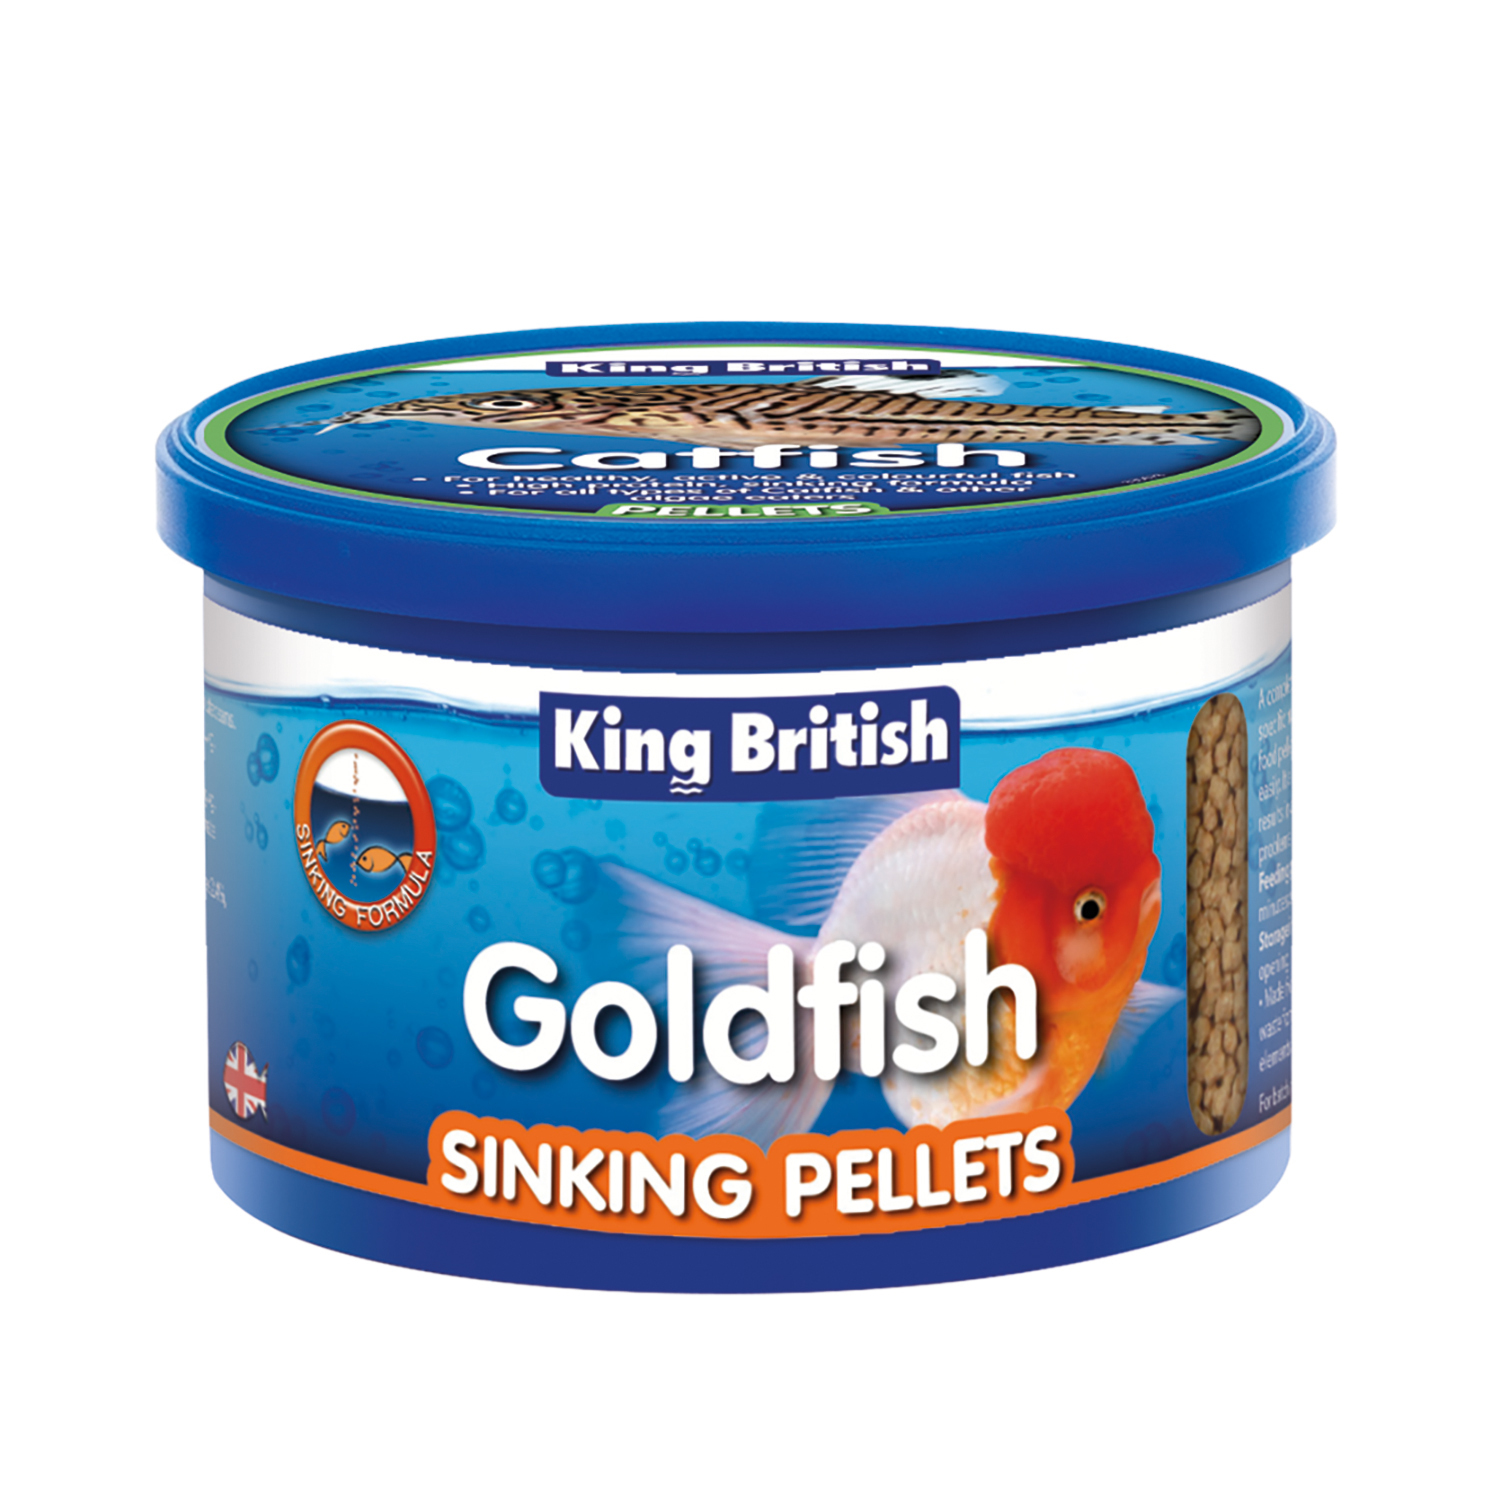 King Britsh Goldfish Sinking Pellets Image